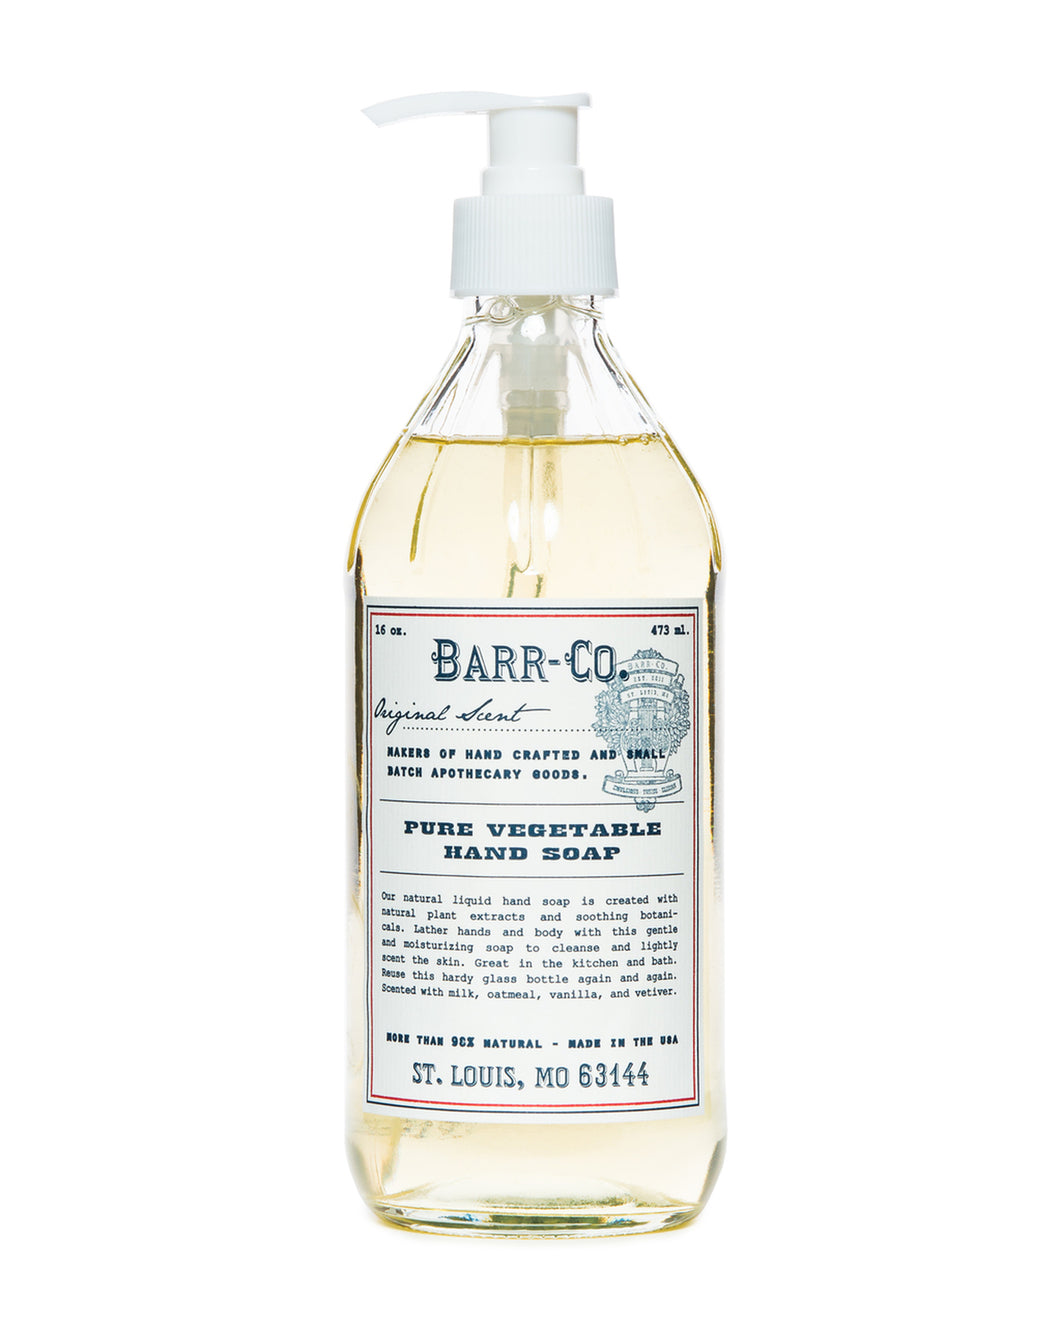 Barr Co. Original Scent Liquid Hand Soap